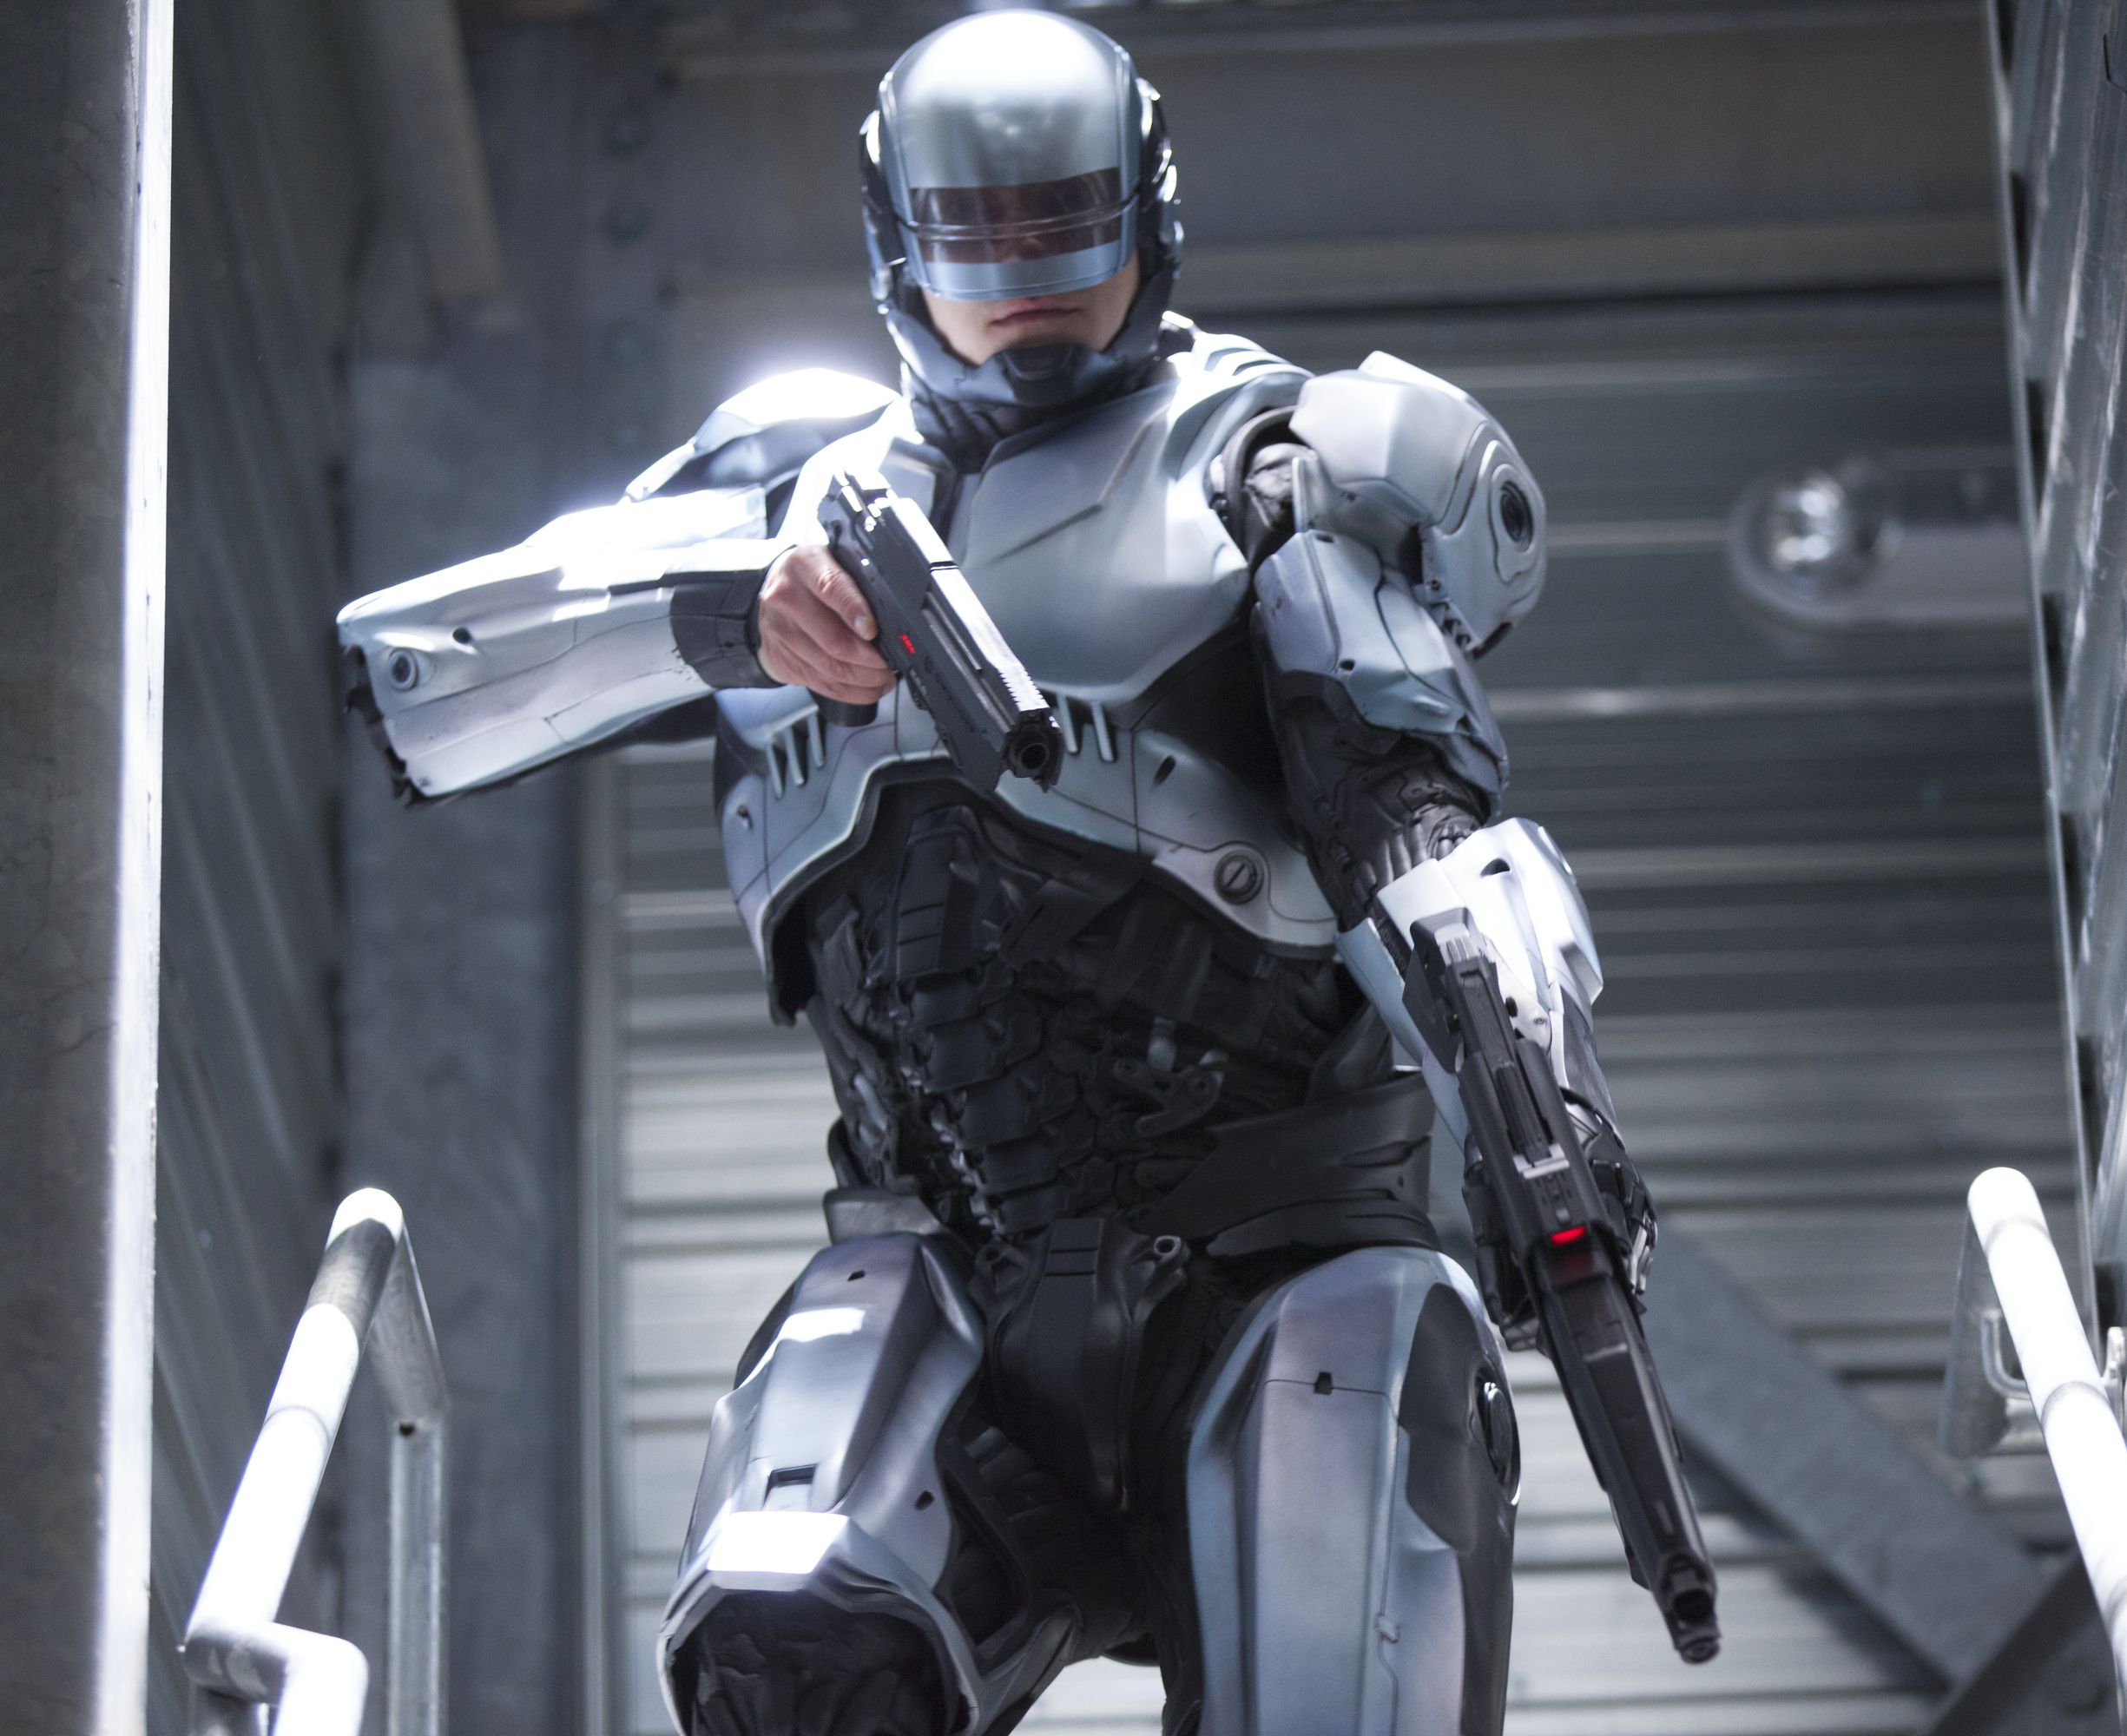 Big new RoboCop suit